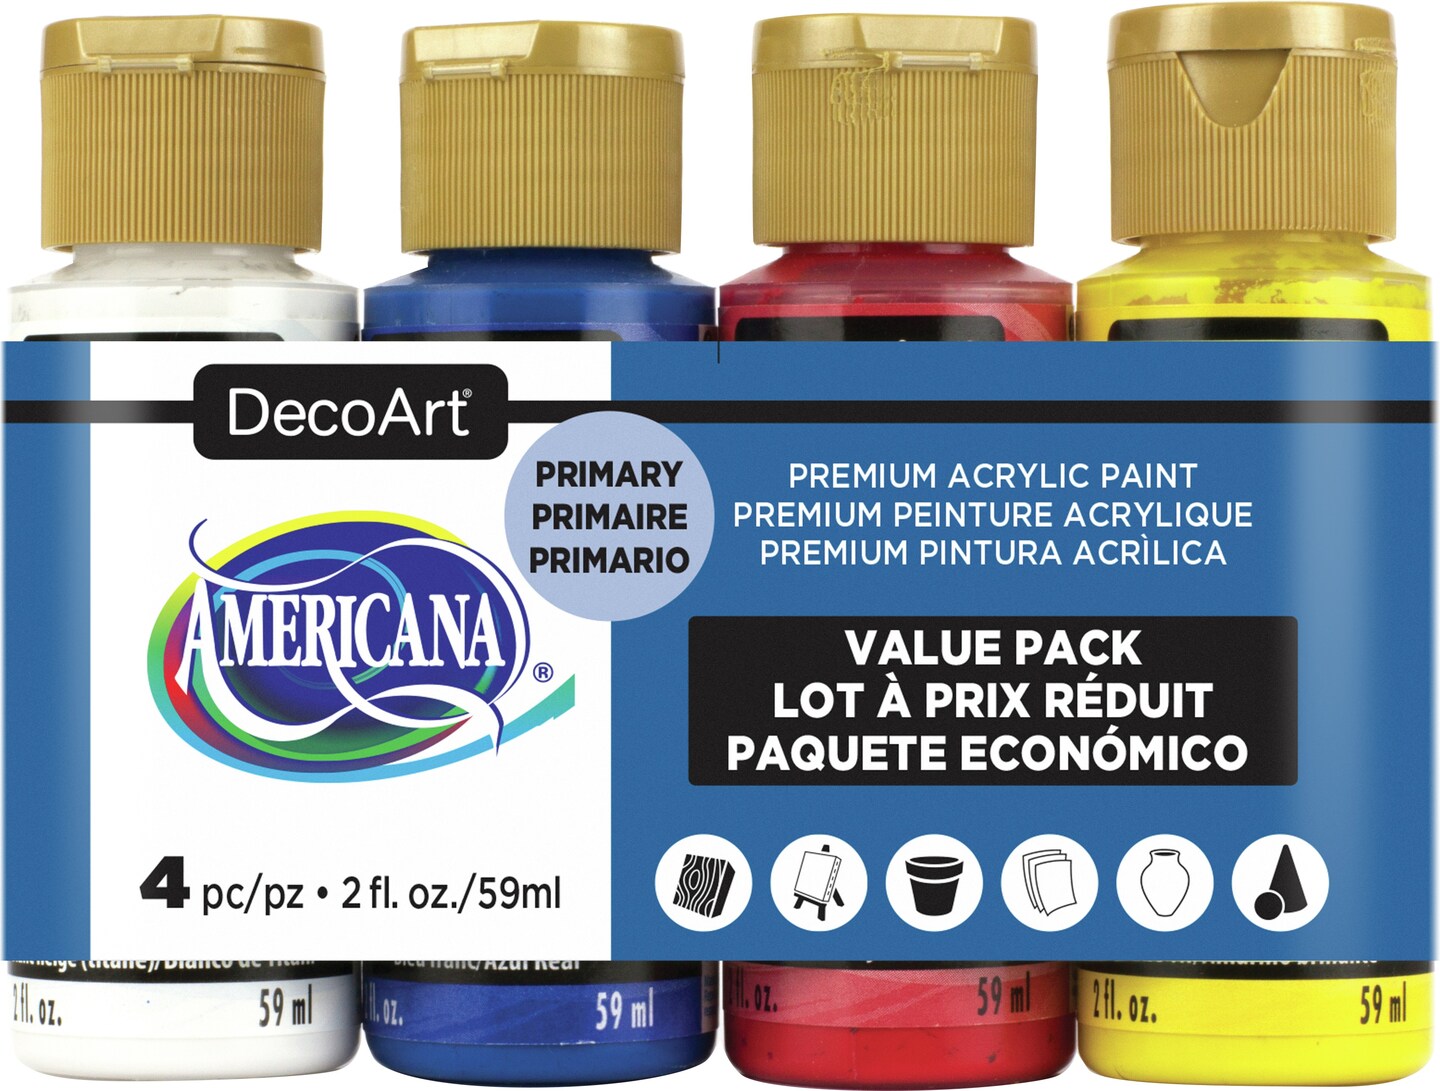 Decoart Americana Acrylic Paint